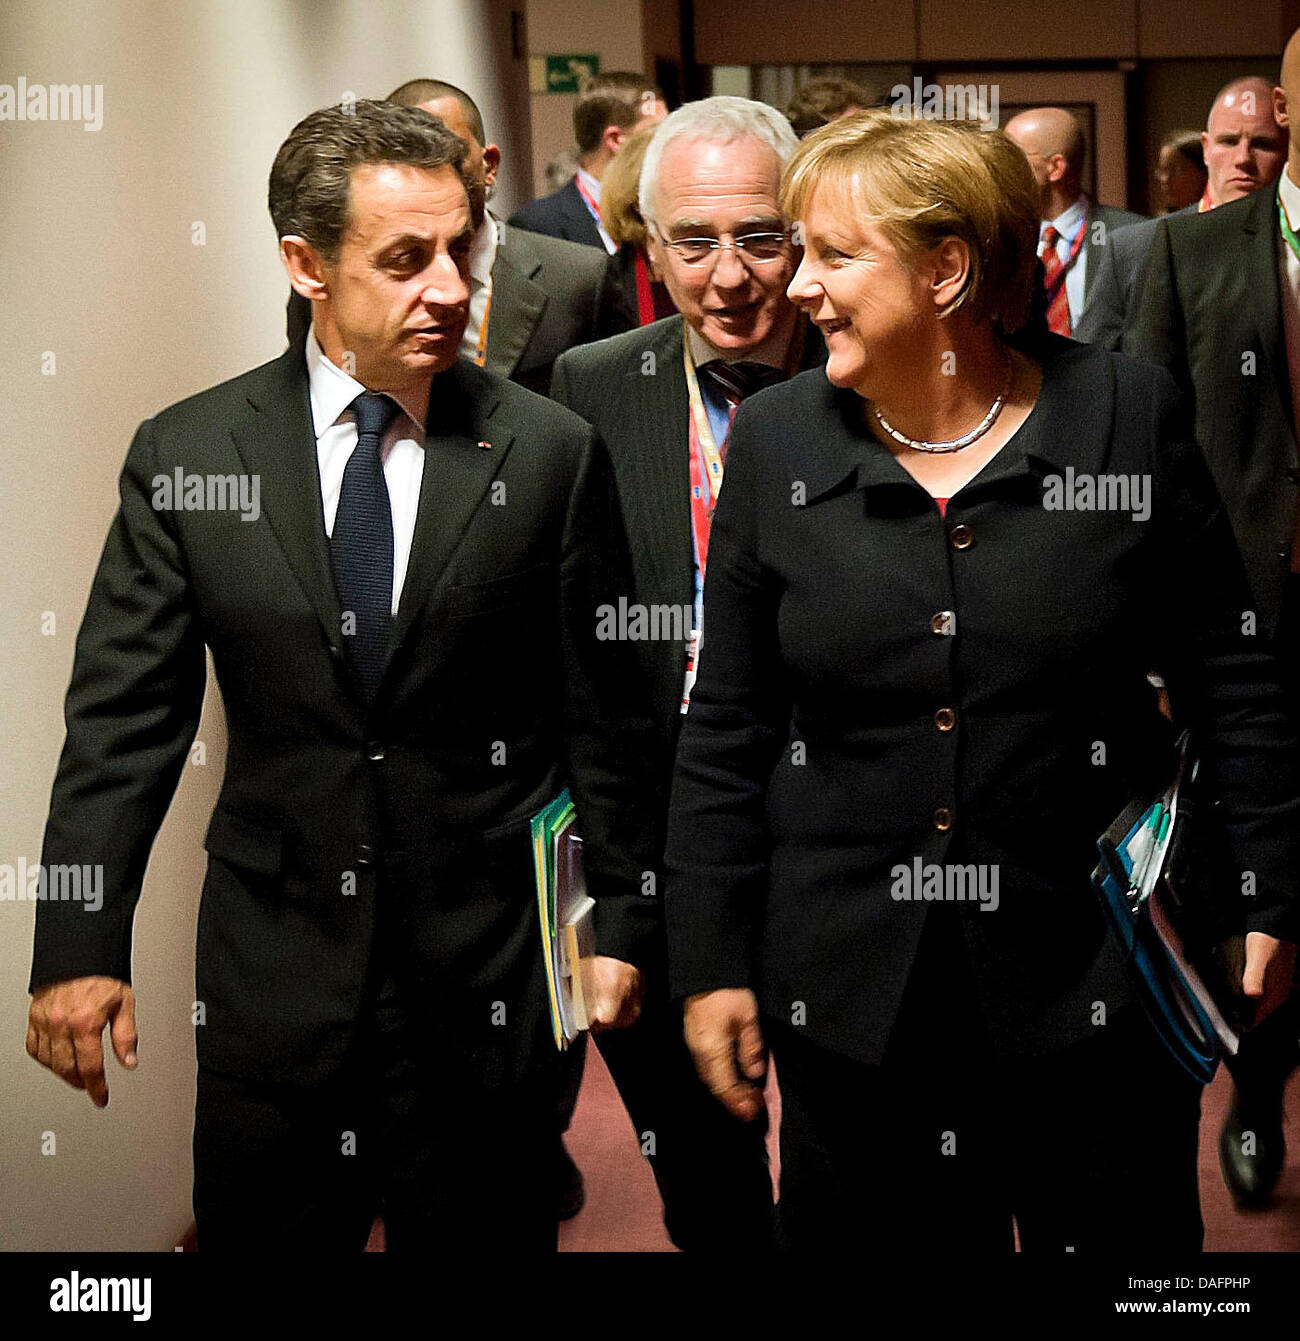 Bundeskanzlerin Angela Merkel (CDU, r) und Frankreichs Staatspräsident Nicolas Sarkozy (l) unterhalten sich in Brüssel, Belgien, auf dem Weg zum Arbeitsabendessen der Staats- und Regierungschefs am Donnerstag (08.12.2011) beim EU-Gipfel. In der mitte geht ein Dolmetscher. Merkel hatte vorher für eine Veränderung der EU-Verträge und für eine Stärkung der europäischen Institutionen g Stock Photo